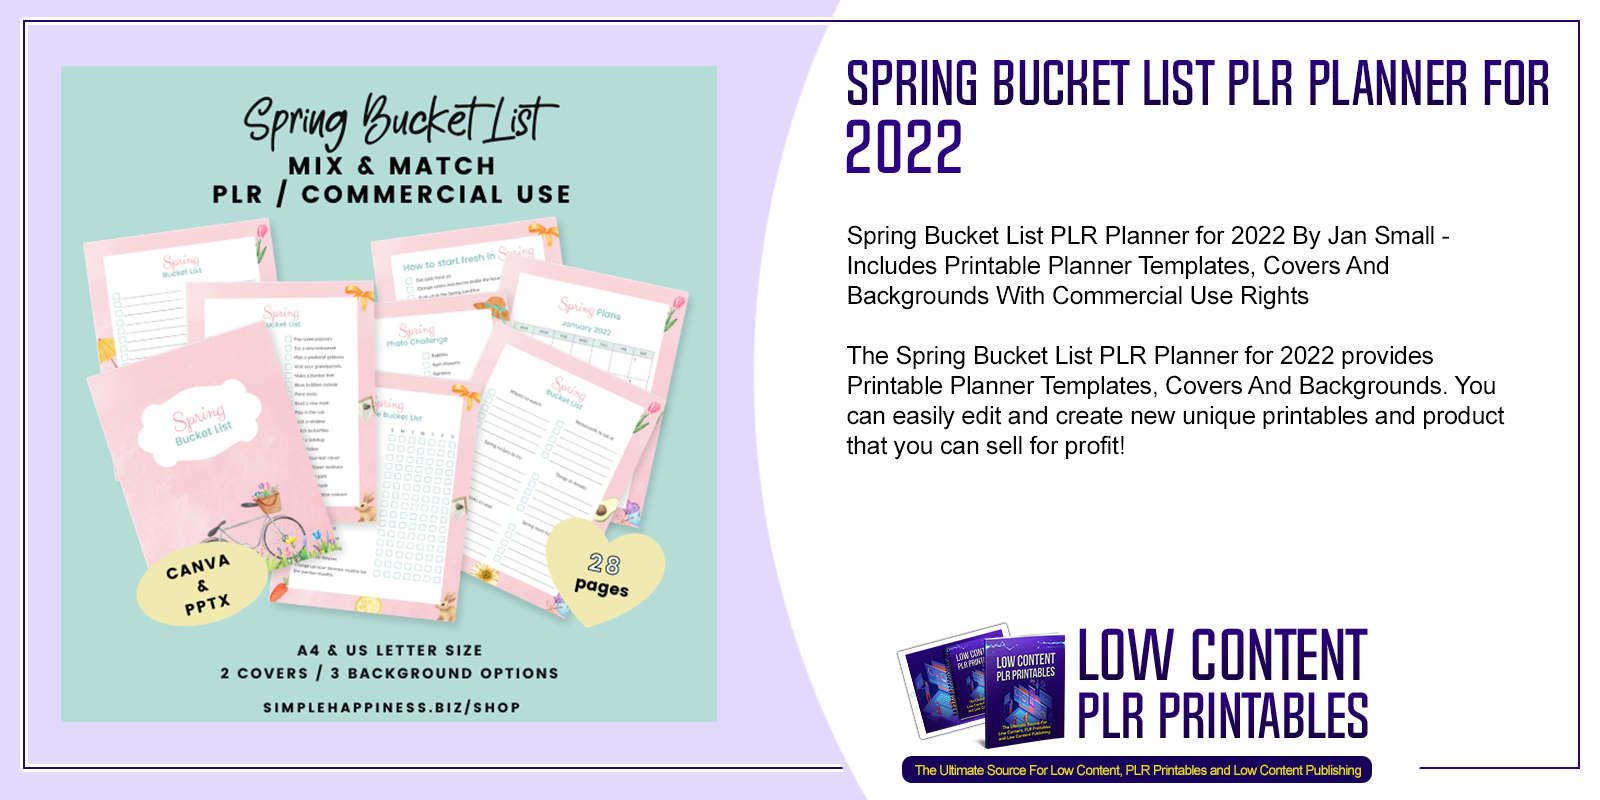 Spring Bucket List PLR Planner for 2022